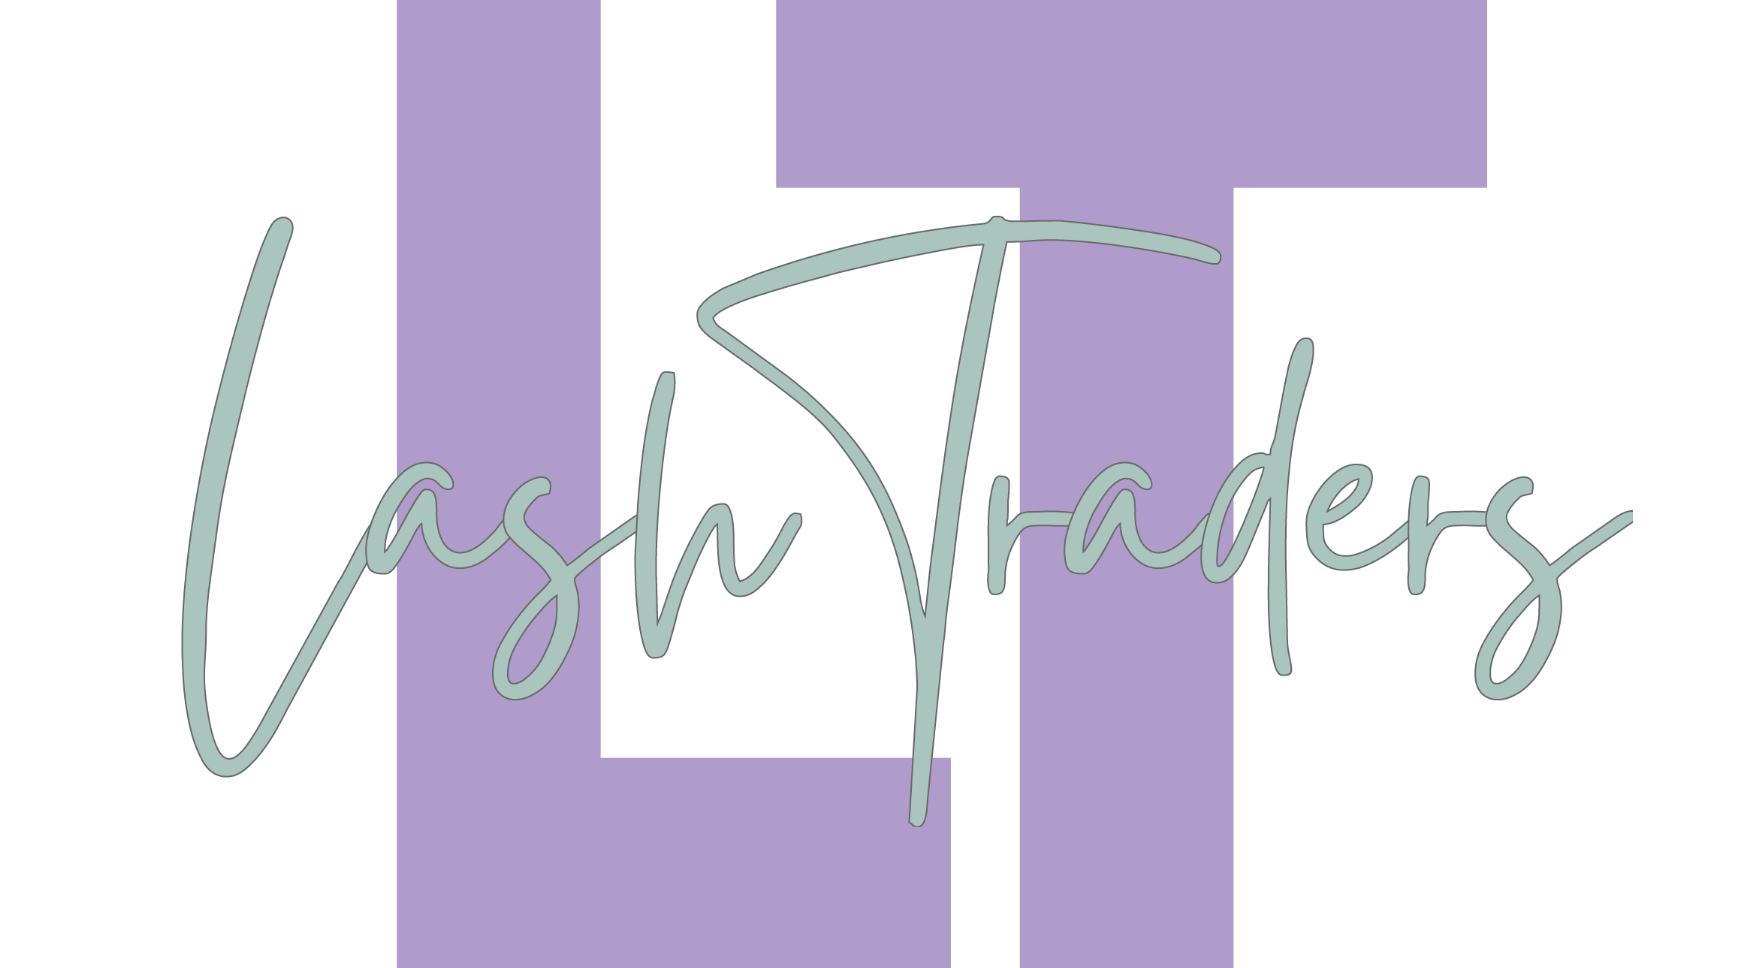 Lash Trader logo